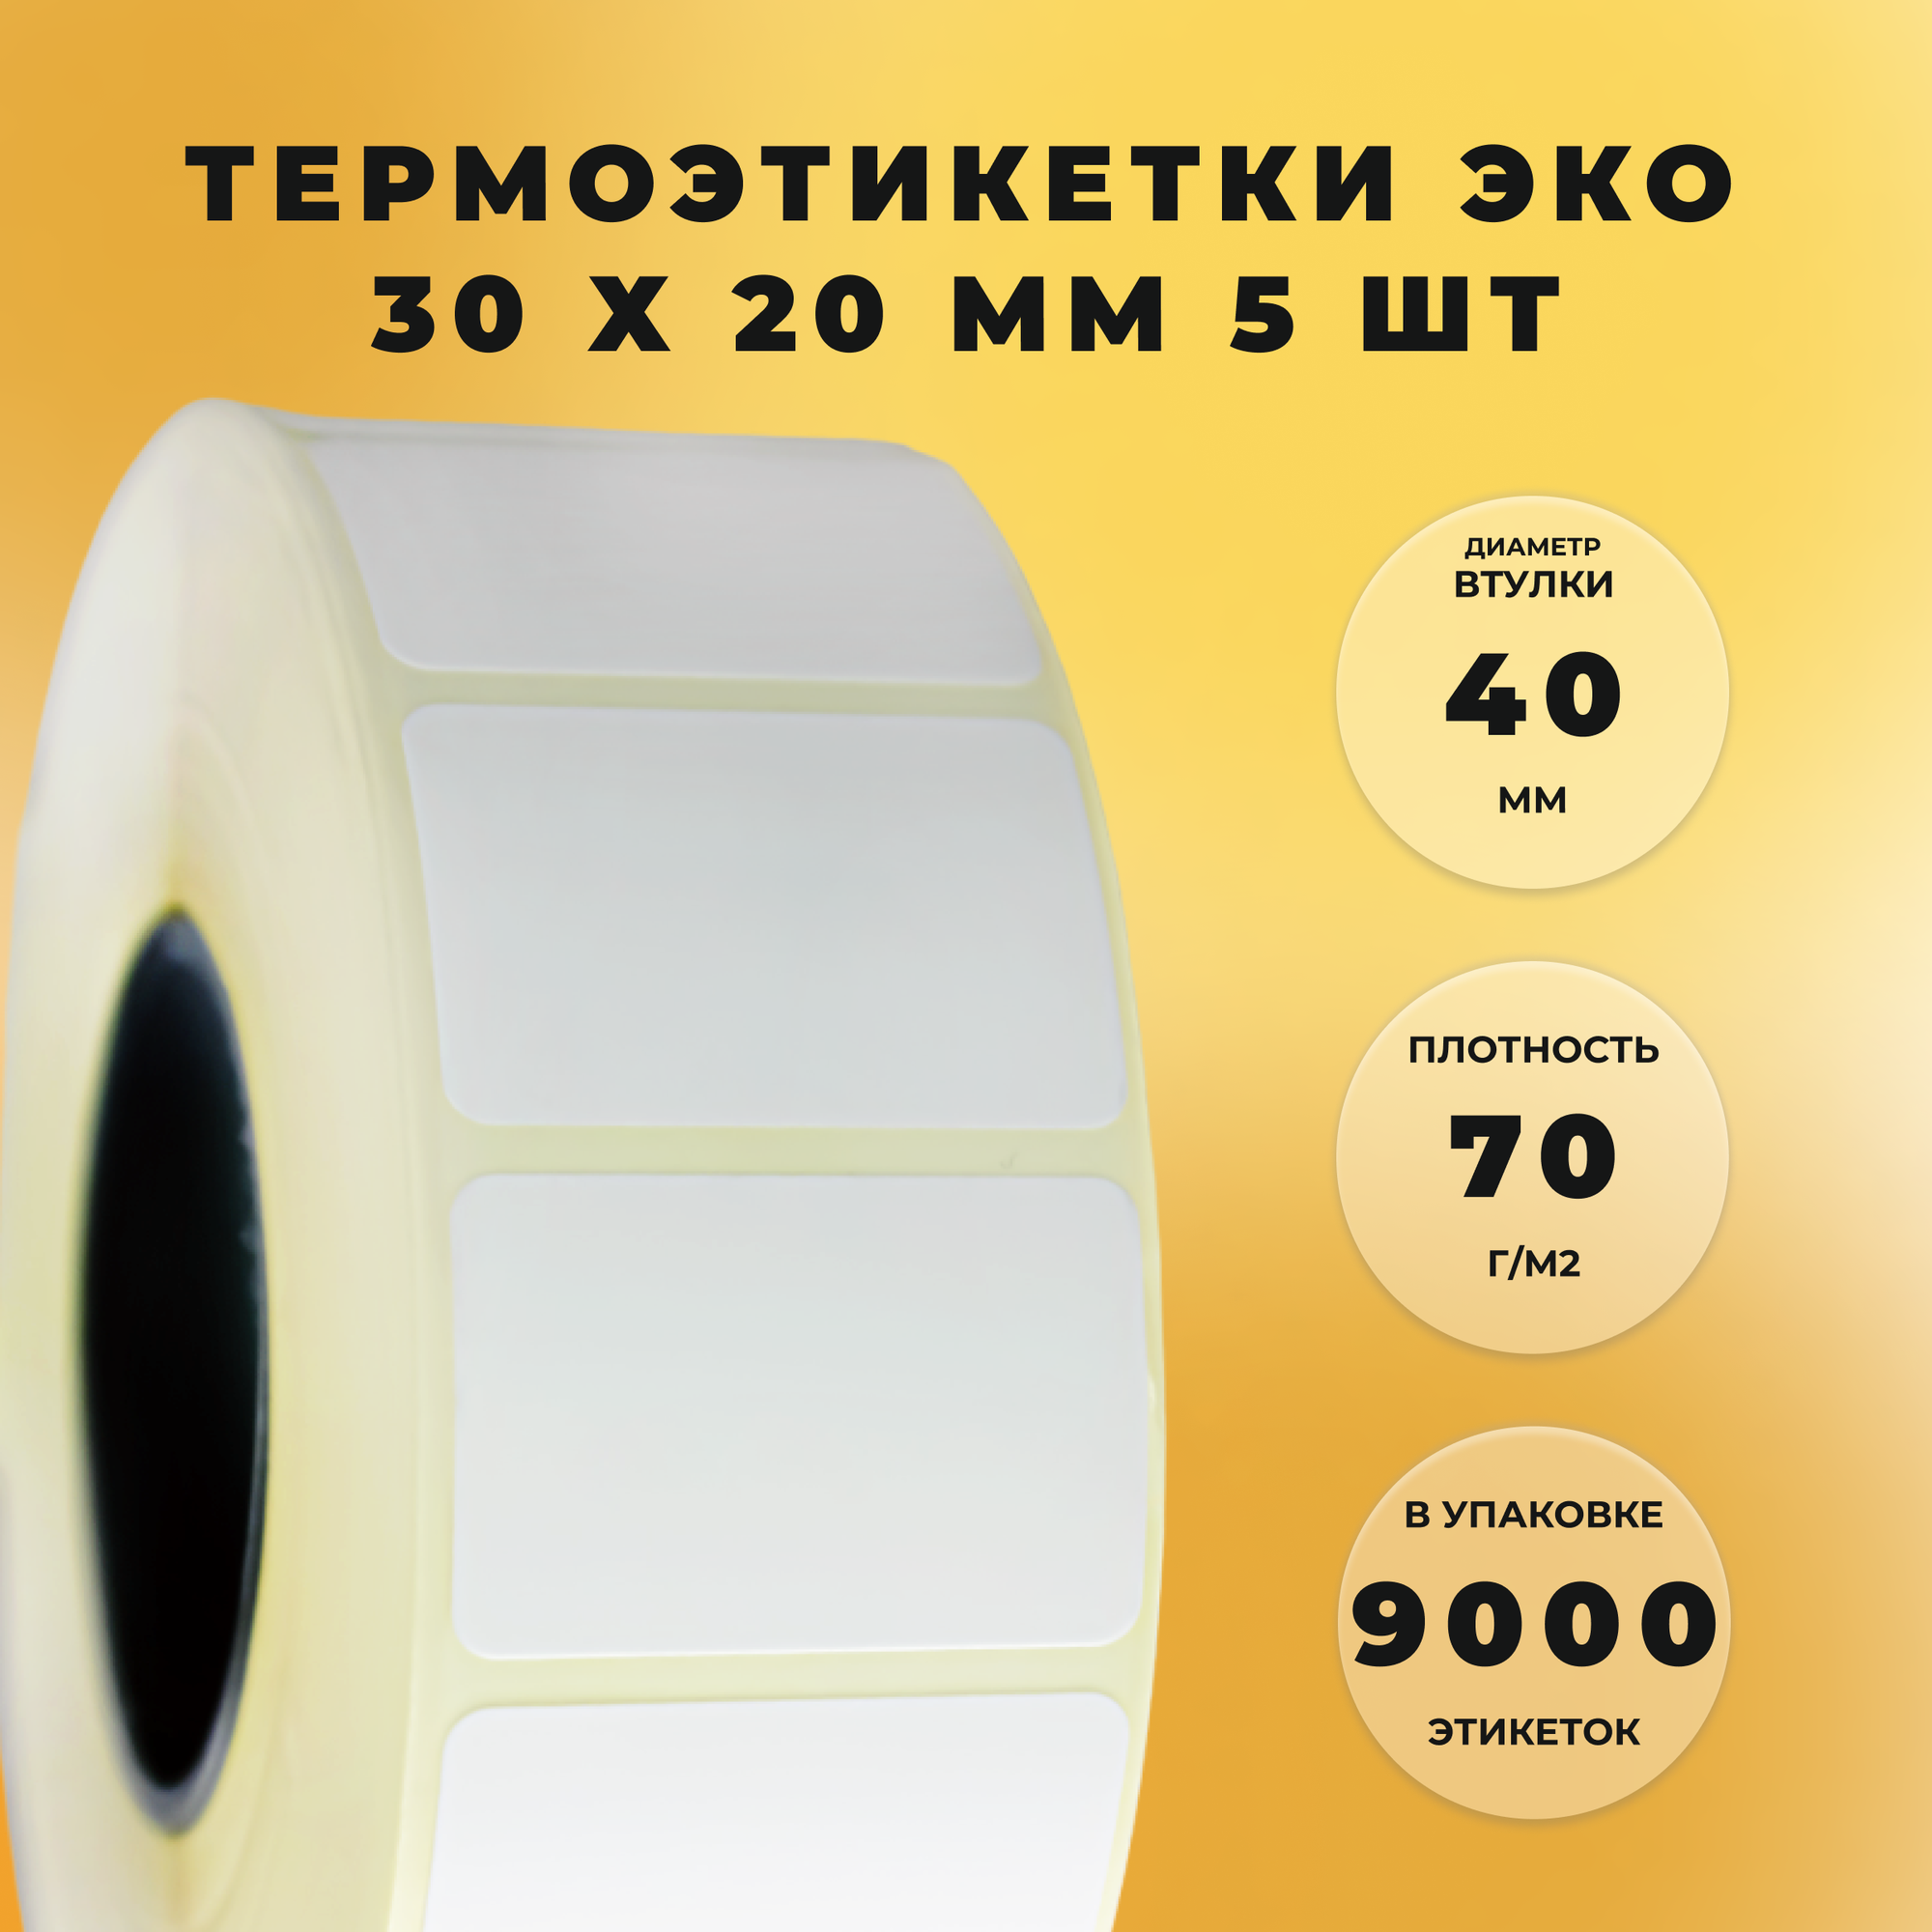 Термоэтикетки 30 х 20 мм ЭКО СтандартПАК (1800 штук в рулоне) 5 рулонов в упаковке